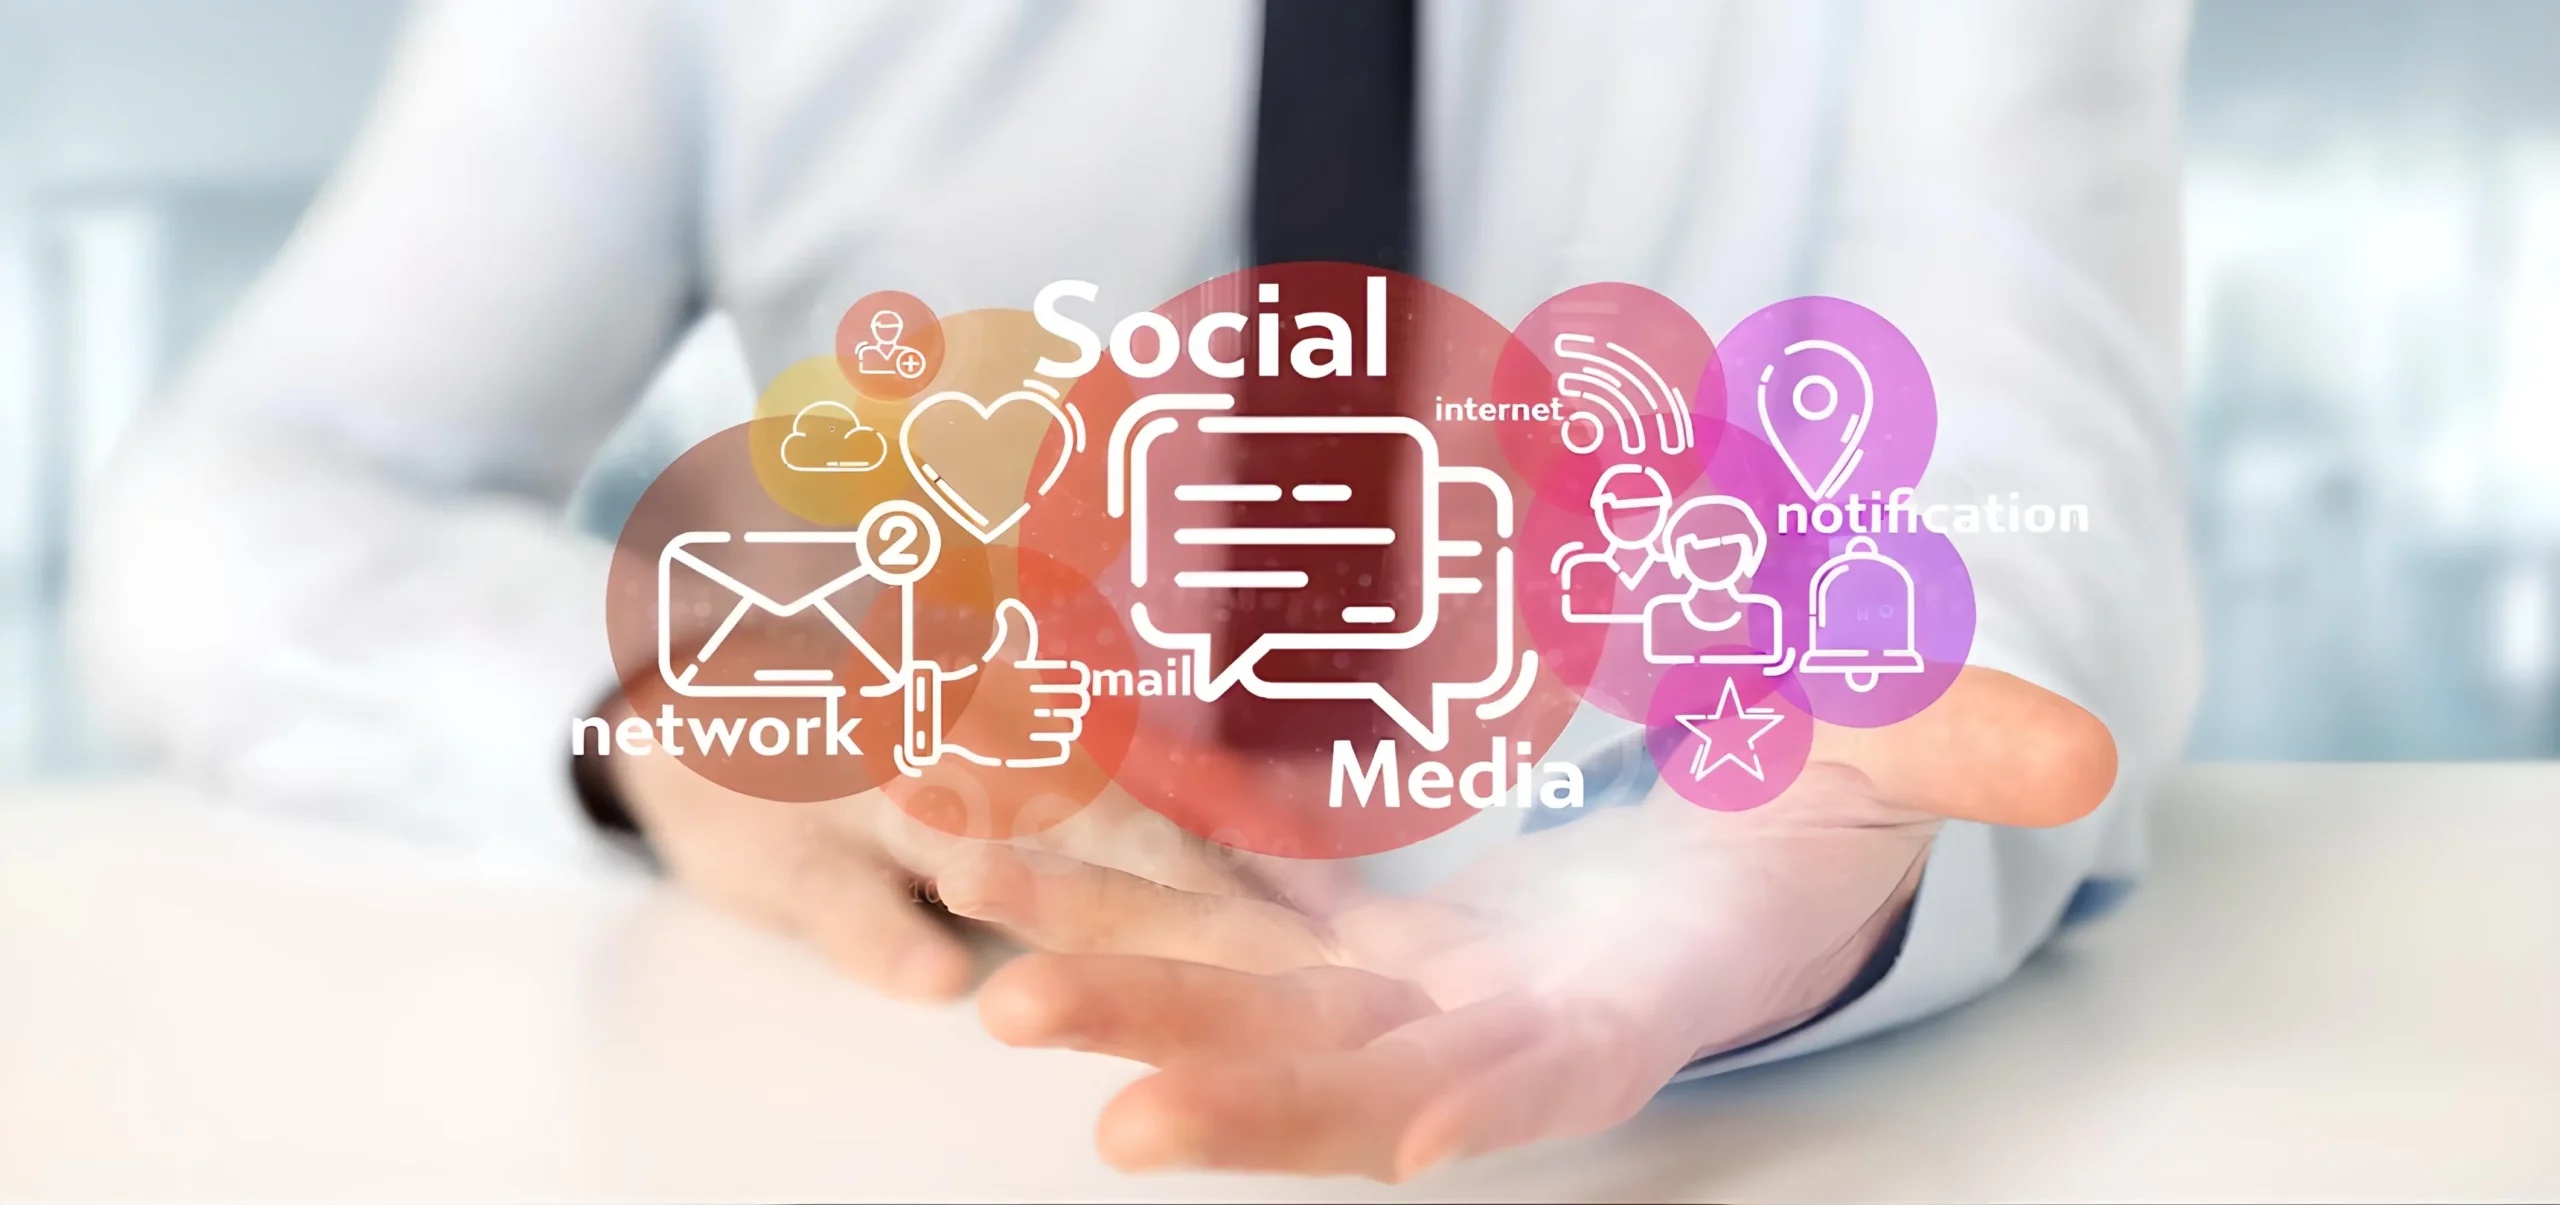 Scopri di più sull'articolo Come utilizzare i social media per promuovere la tua attività e raggiungere i tuoi obiettivi di marketing affidando la gestione dei social media a un professionista